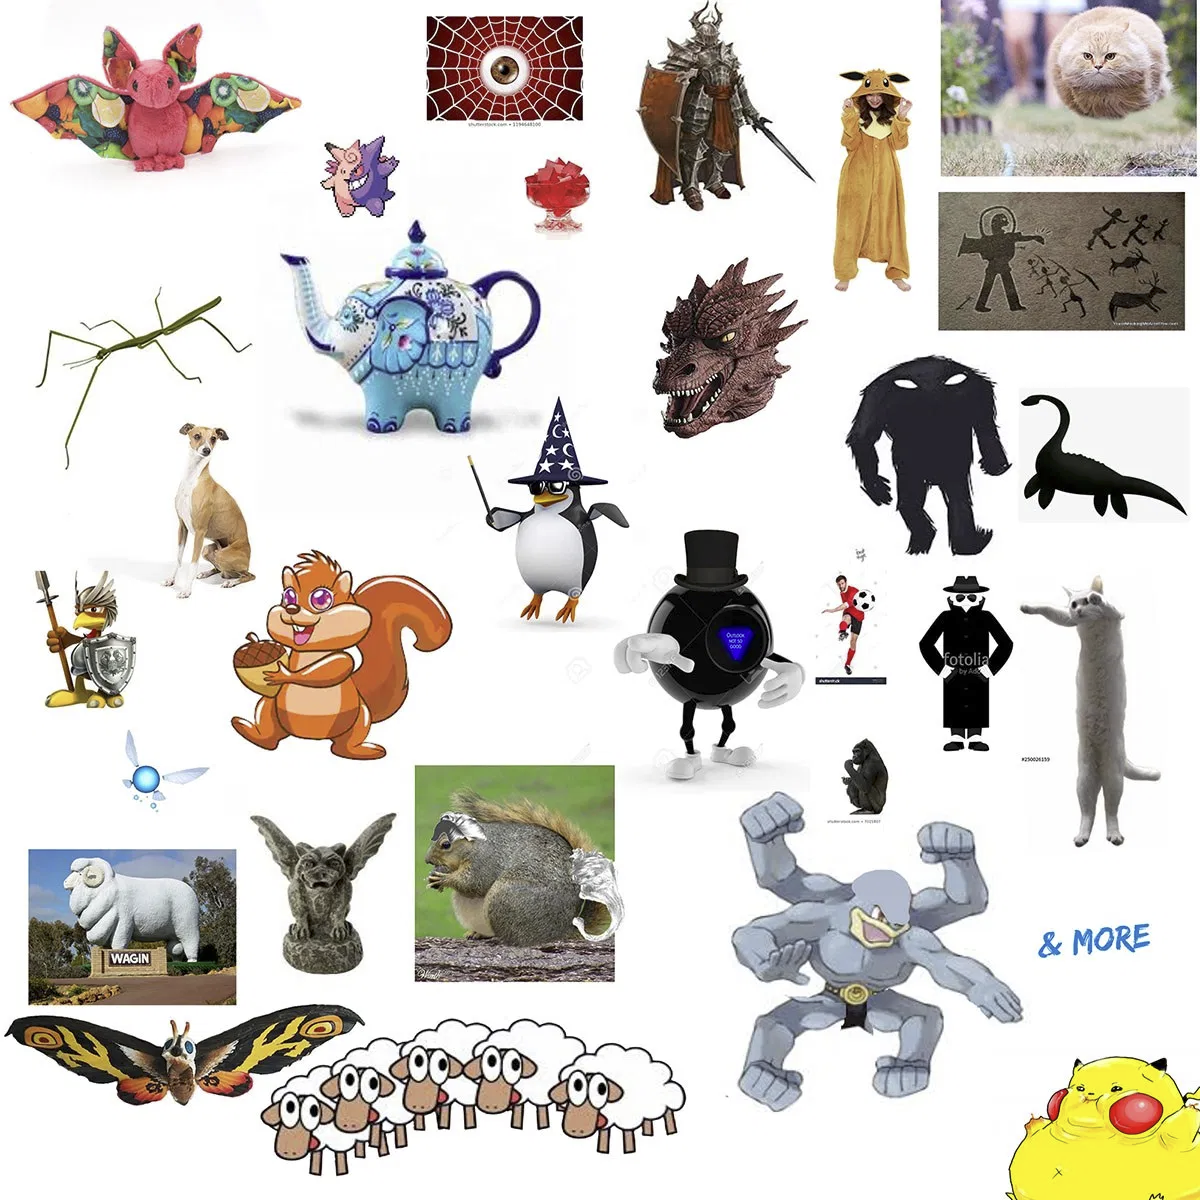 100 - Voltorb - Go Park: Living Dex - Project Pokemon Forums